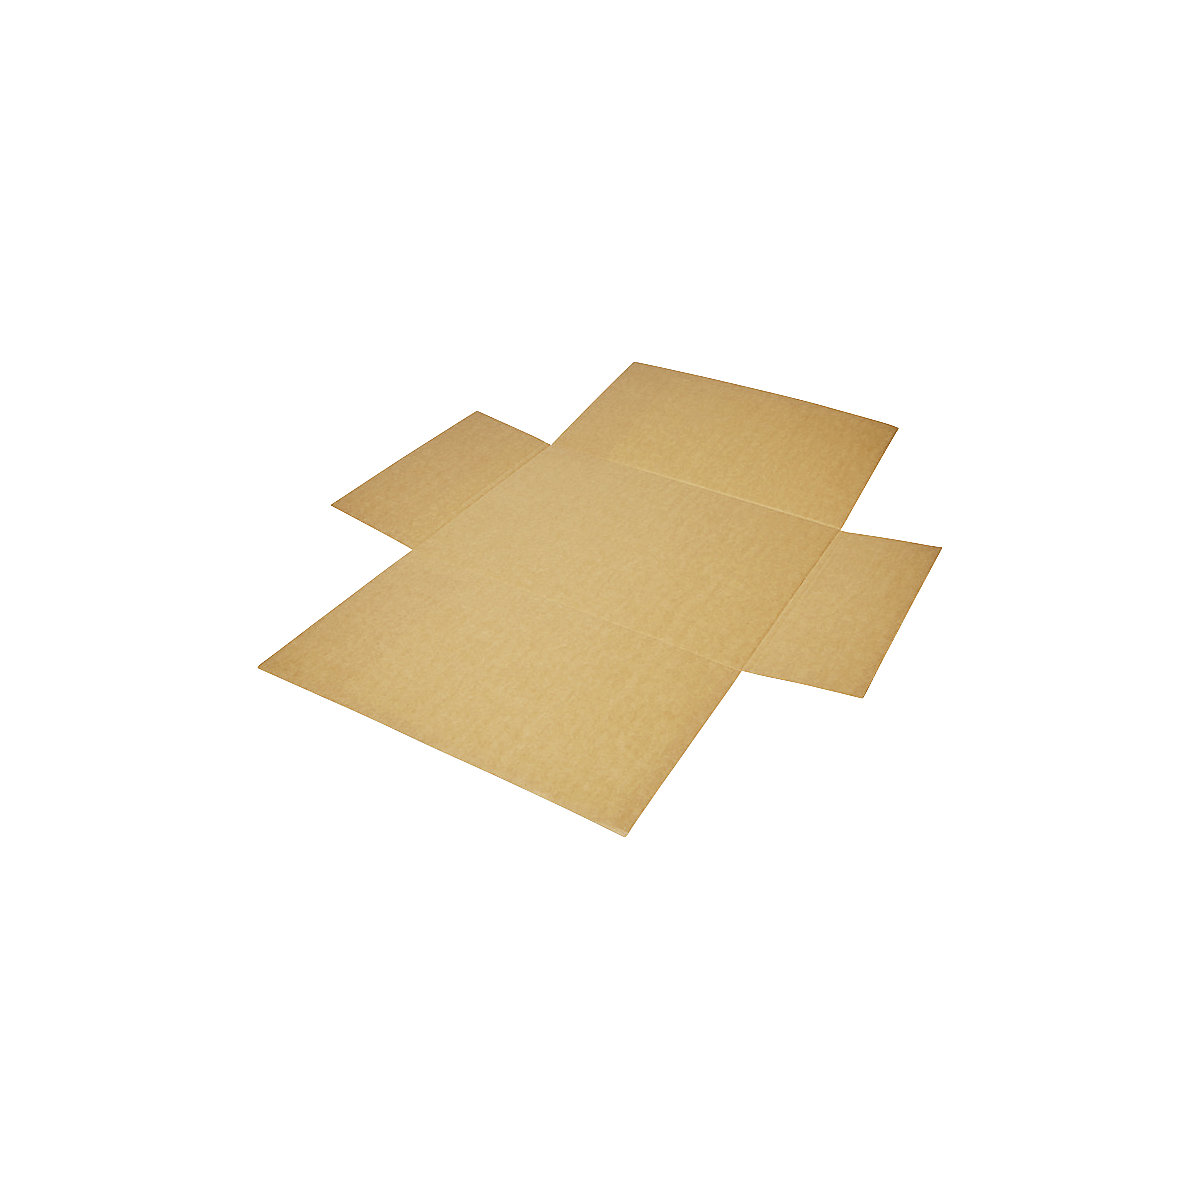 Imballaggio incrociato, in pezzo unico, a 1 parete, marrone, lungh. x largh. 600 x 425 mm, altezza di riempimento 120 mm, a partire da 10 pz.-1